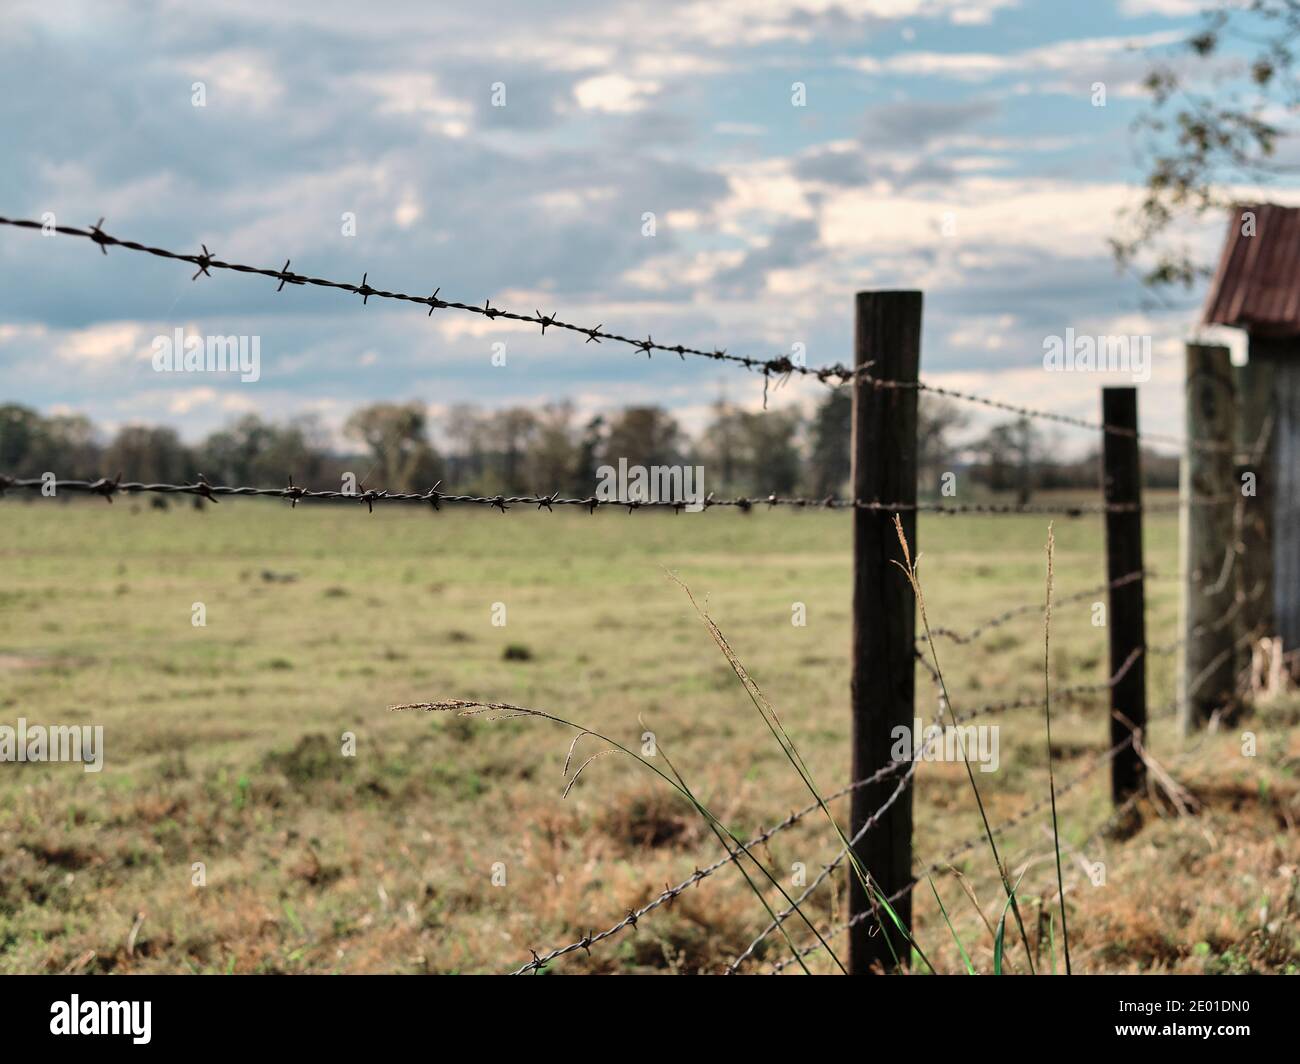 Valla de alambre de púas, cercado de un pasto en una granja o rancho para confinar ganado en Alabama, Estados Unidos. Foto de stock